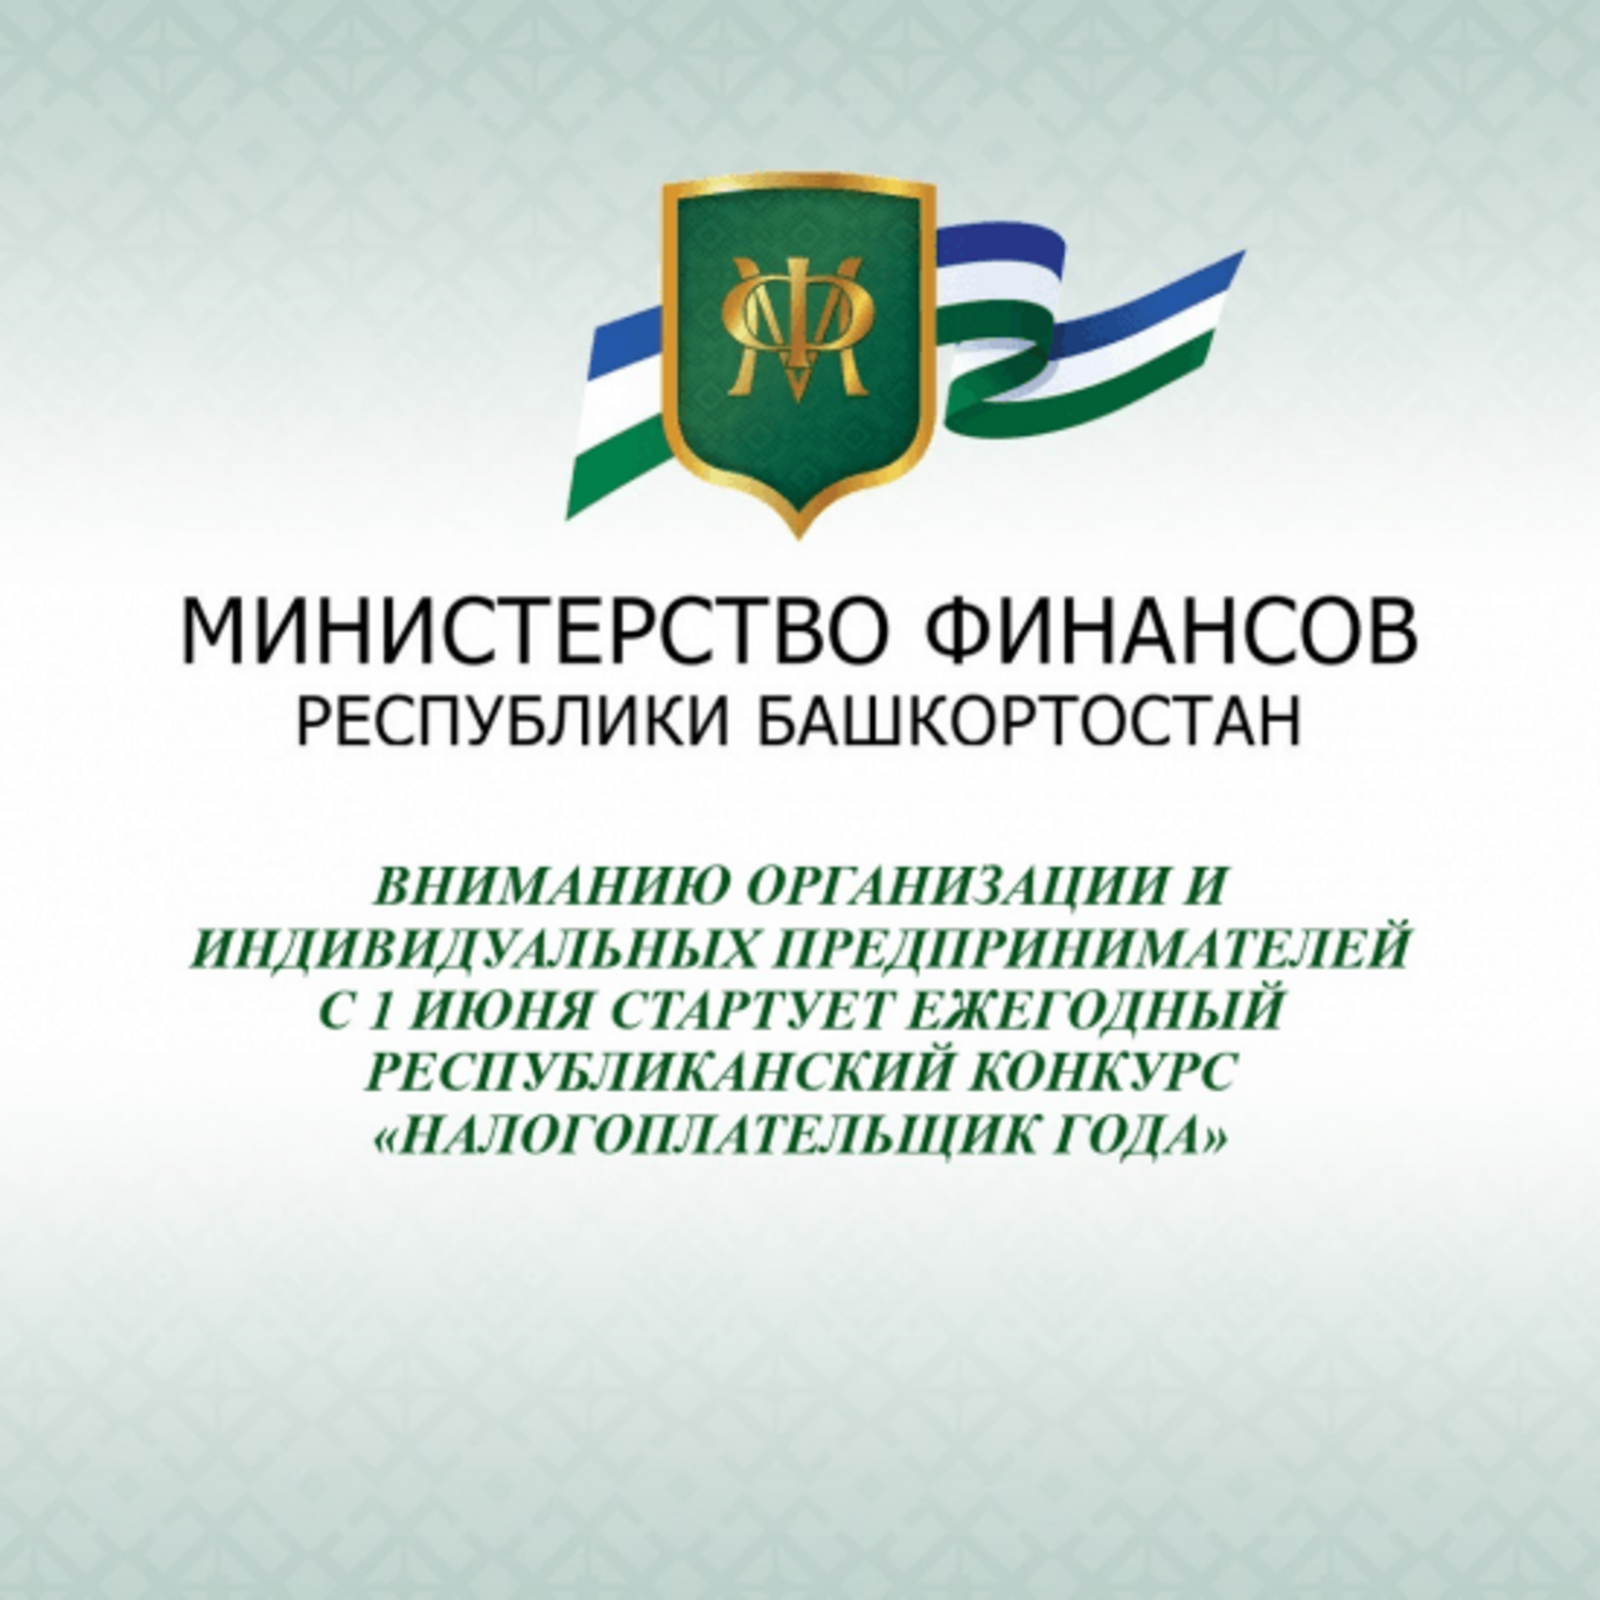 В Башкортостане с 1 июня стартует республиканский конкурс «Налогоплательщик года»